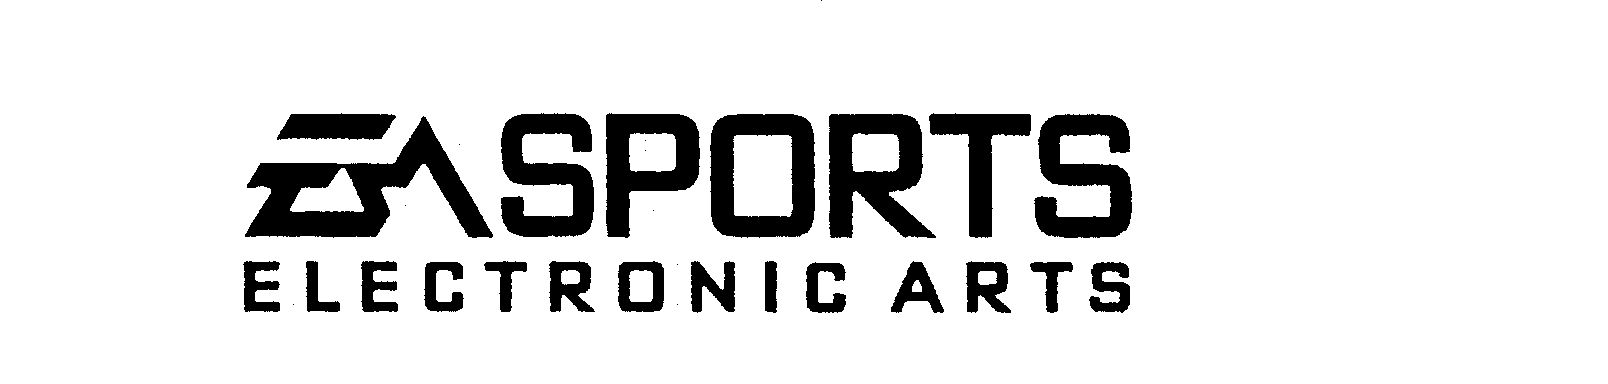 EA SPORTS ELECTRONIC ARTS